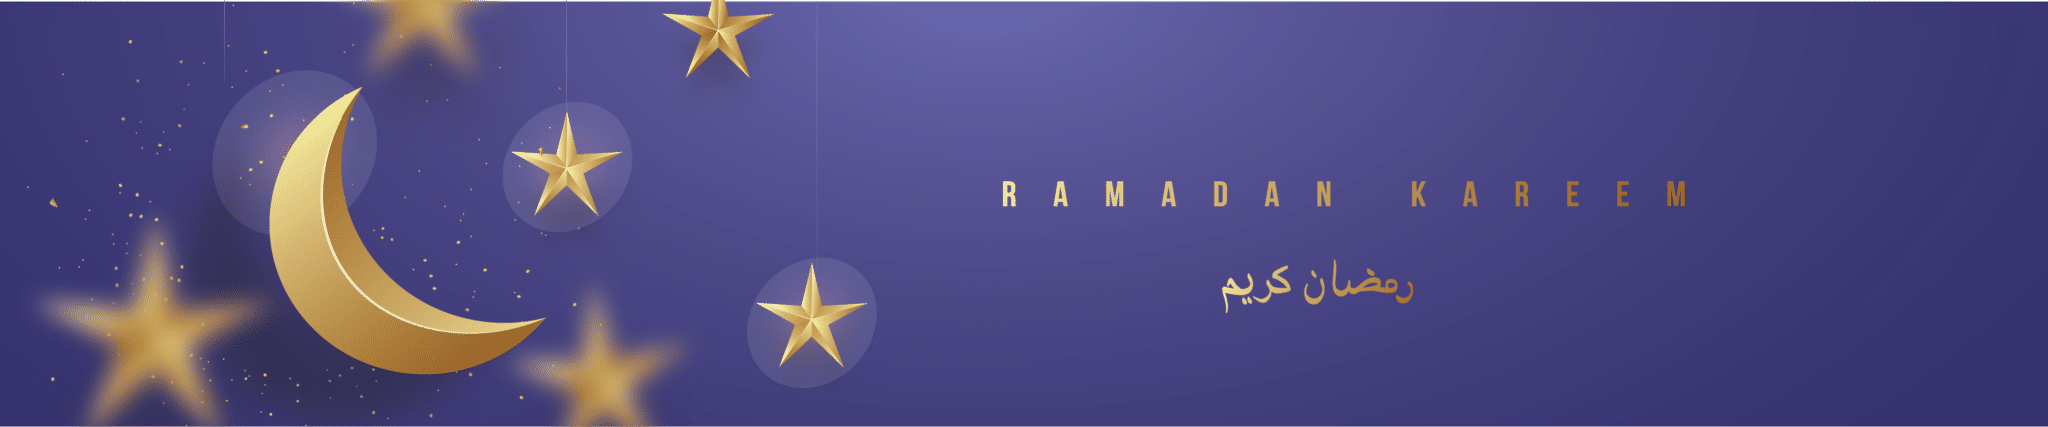 Resized_Ramadan_2-01